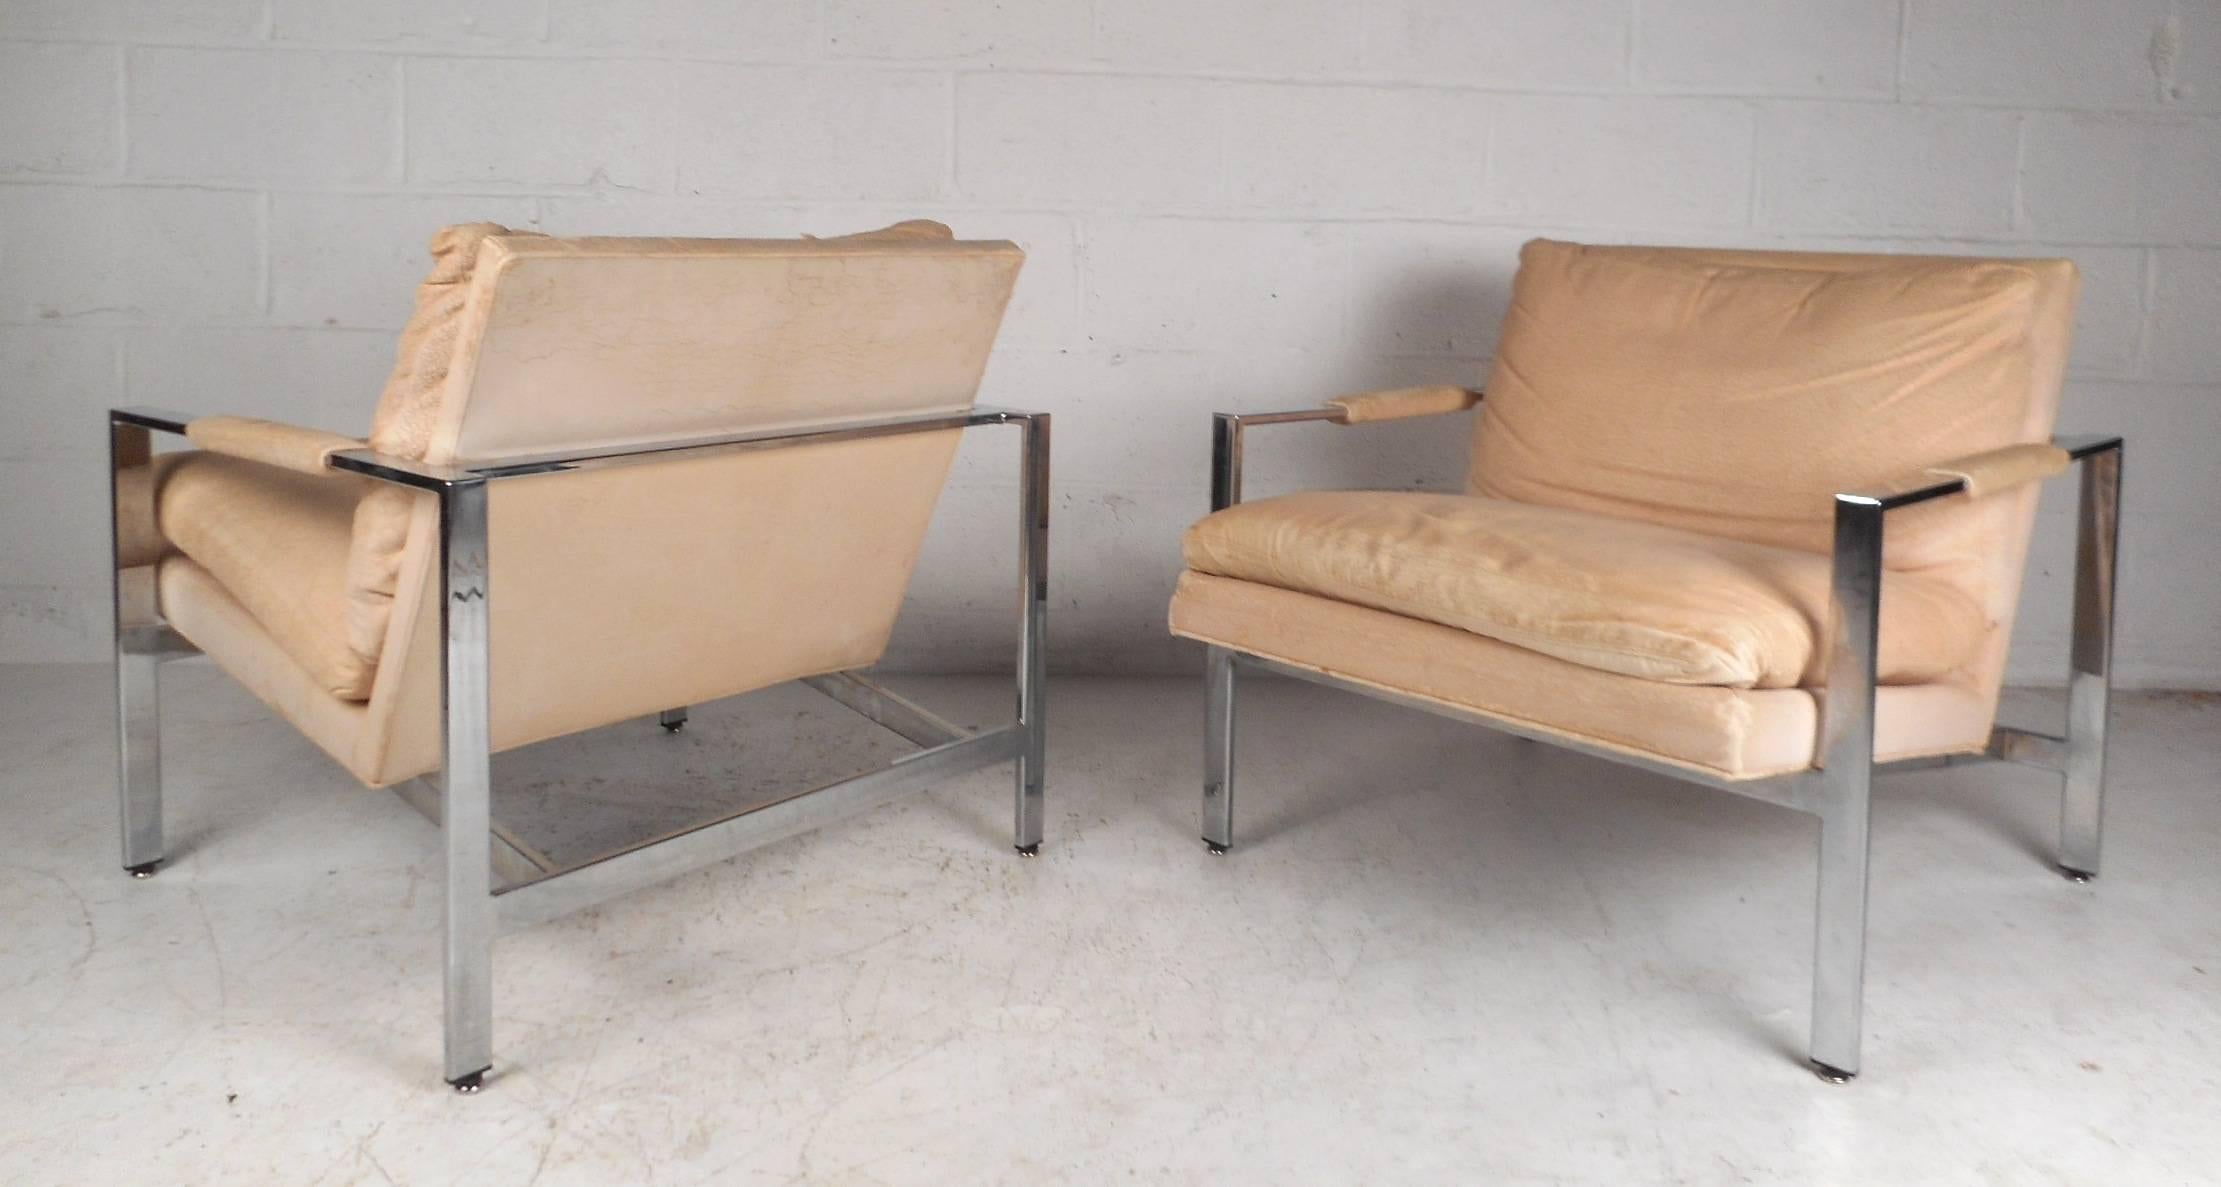 Cette fabuleuse paire de fauteuils vintage modernes est dotée d'une lourde structure chromée à barre plate et d'un épais coussin d'assise amovible rembourré. Les sièges larges, le dossier incliné et les accoudoirs bas et élégants assurent un confort